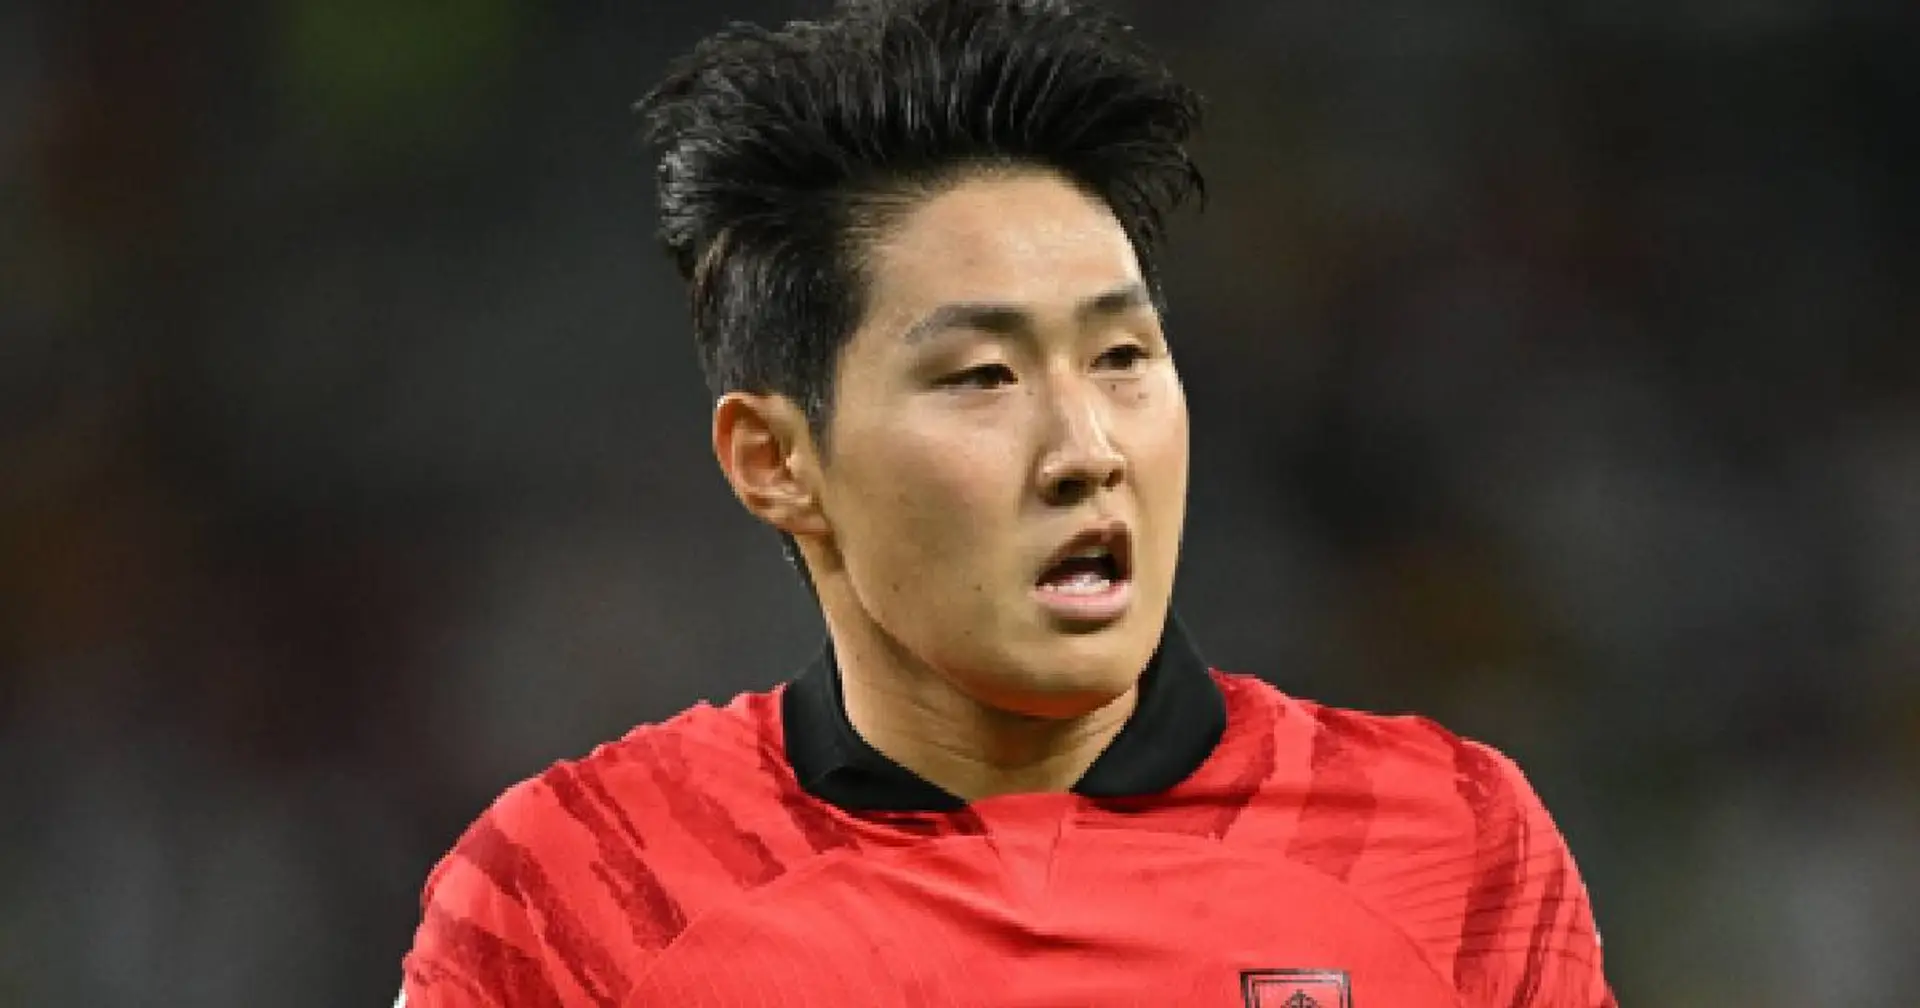 Le PSG autorise la participation de Lee Kang In aux Jeux Asiatiques - pourquoi c'est une bonne nouvelle expliquée